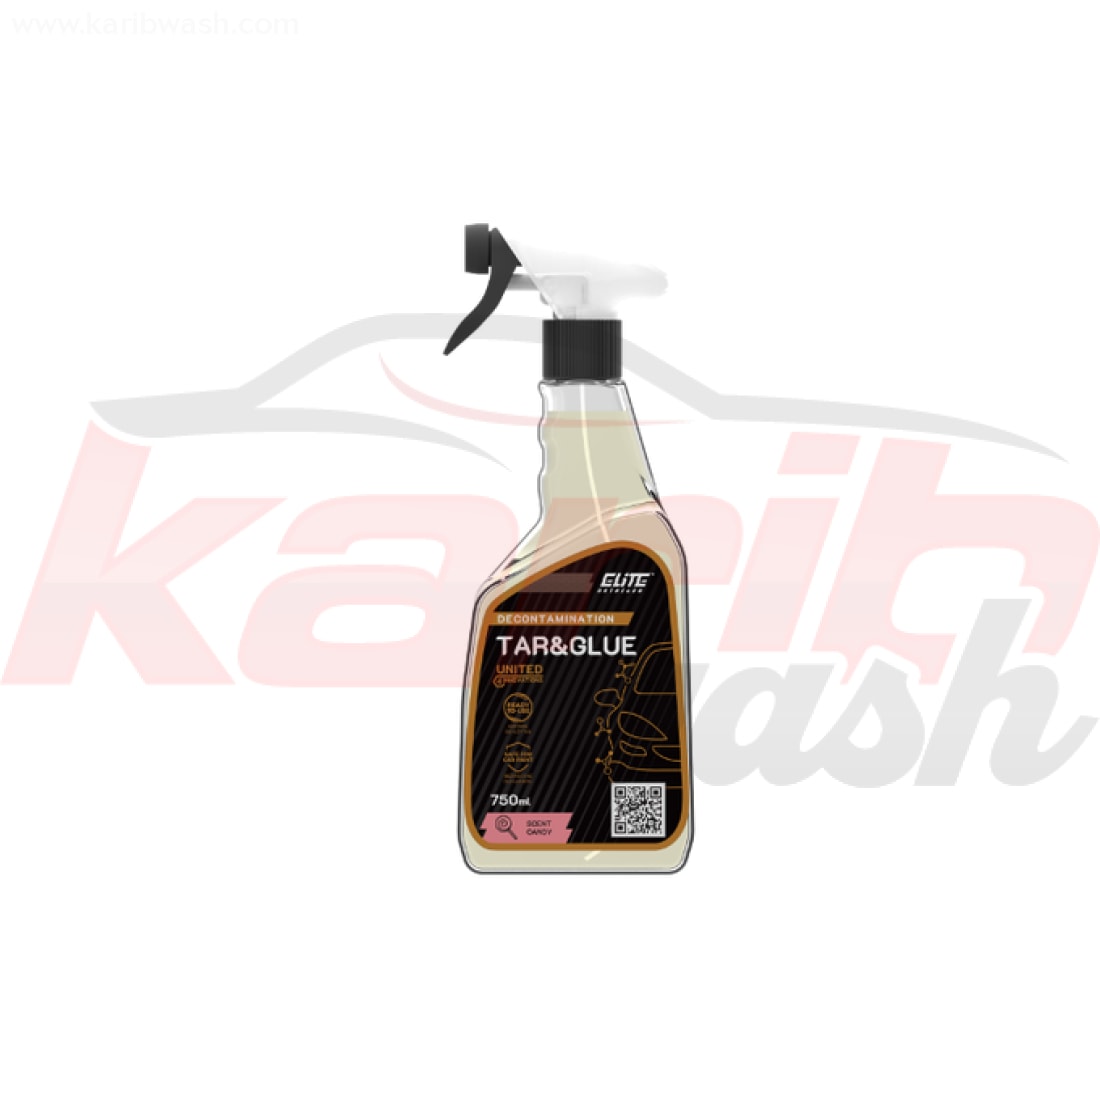 Tar & Glue - Enlève l'asphalte, la colle de la peinture automobile - ELITE DETAILER - KARIBWASH